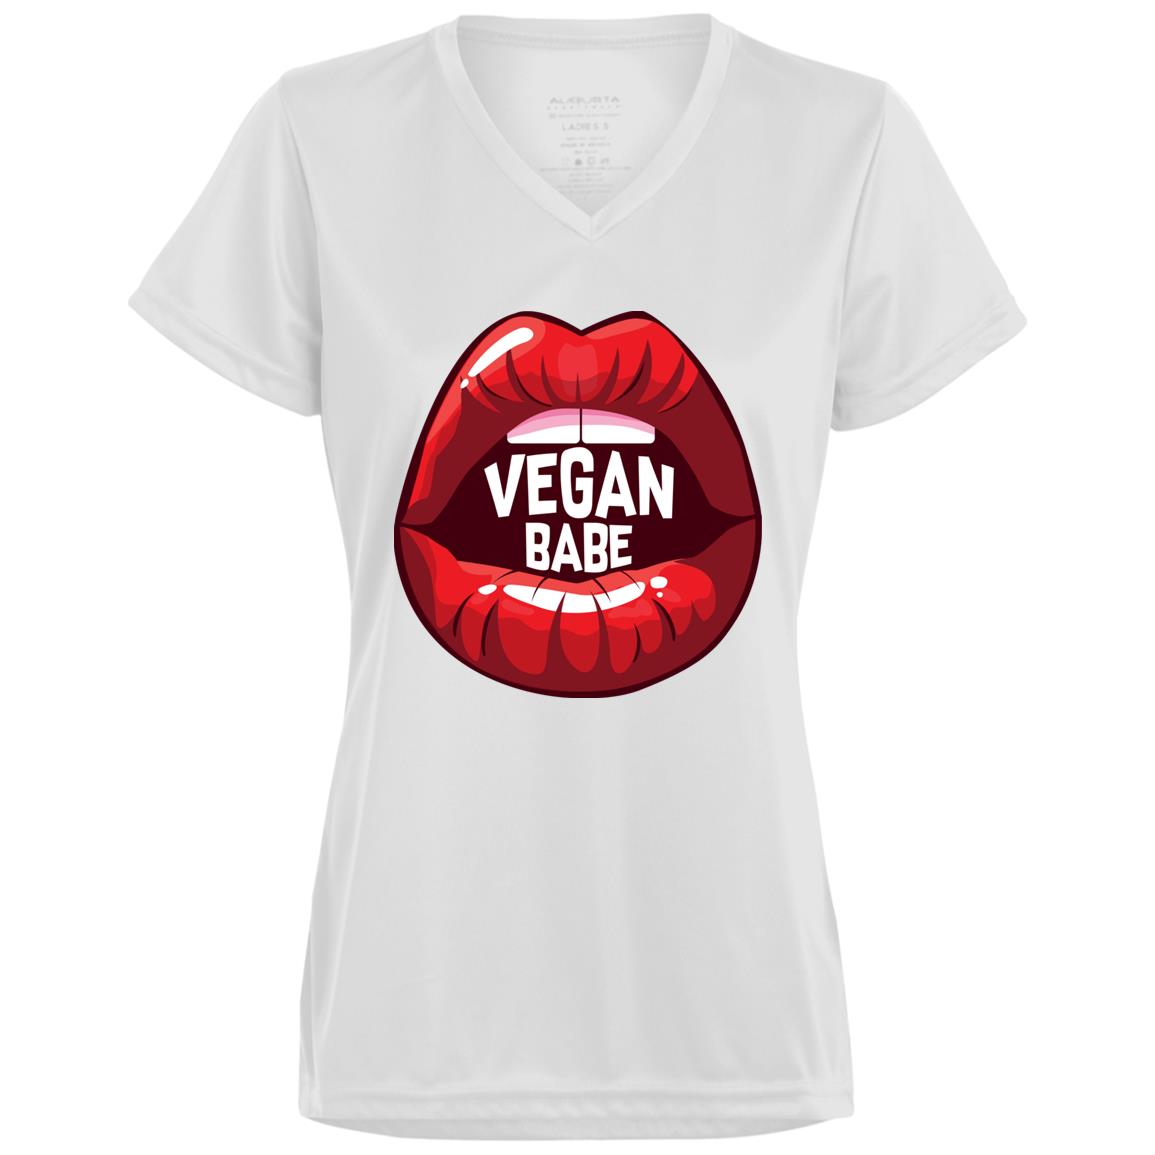 Vegan Babe T-Shirts